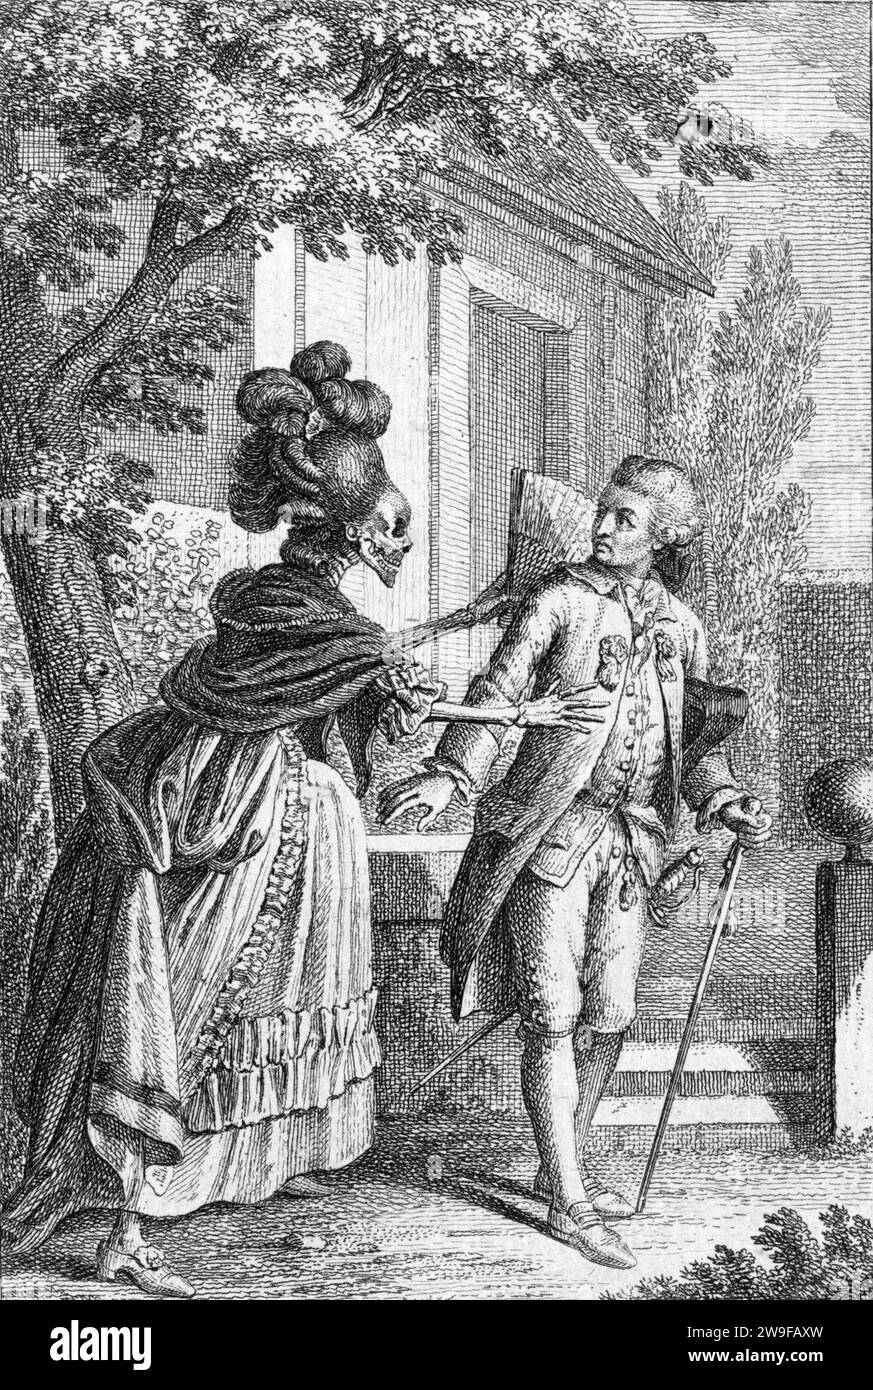 Mort sous couvert d'un squelette portant une mode féminine élaborée attirant un gentleman à sa mort] / Schellenberg, Johann Rudolf, 1740-1806, mort, représenté comme un squelette à la mode féminine élaborée, attirant un gentleman à sa mort. Banque D'Images